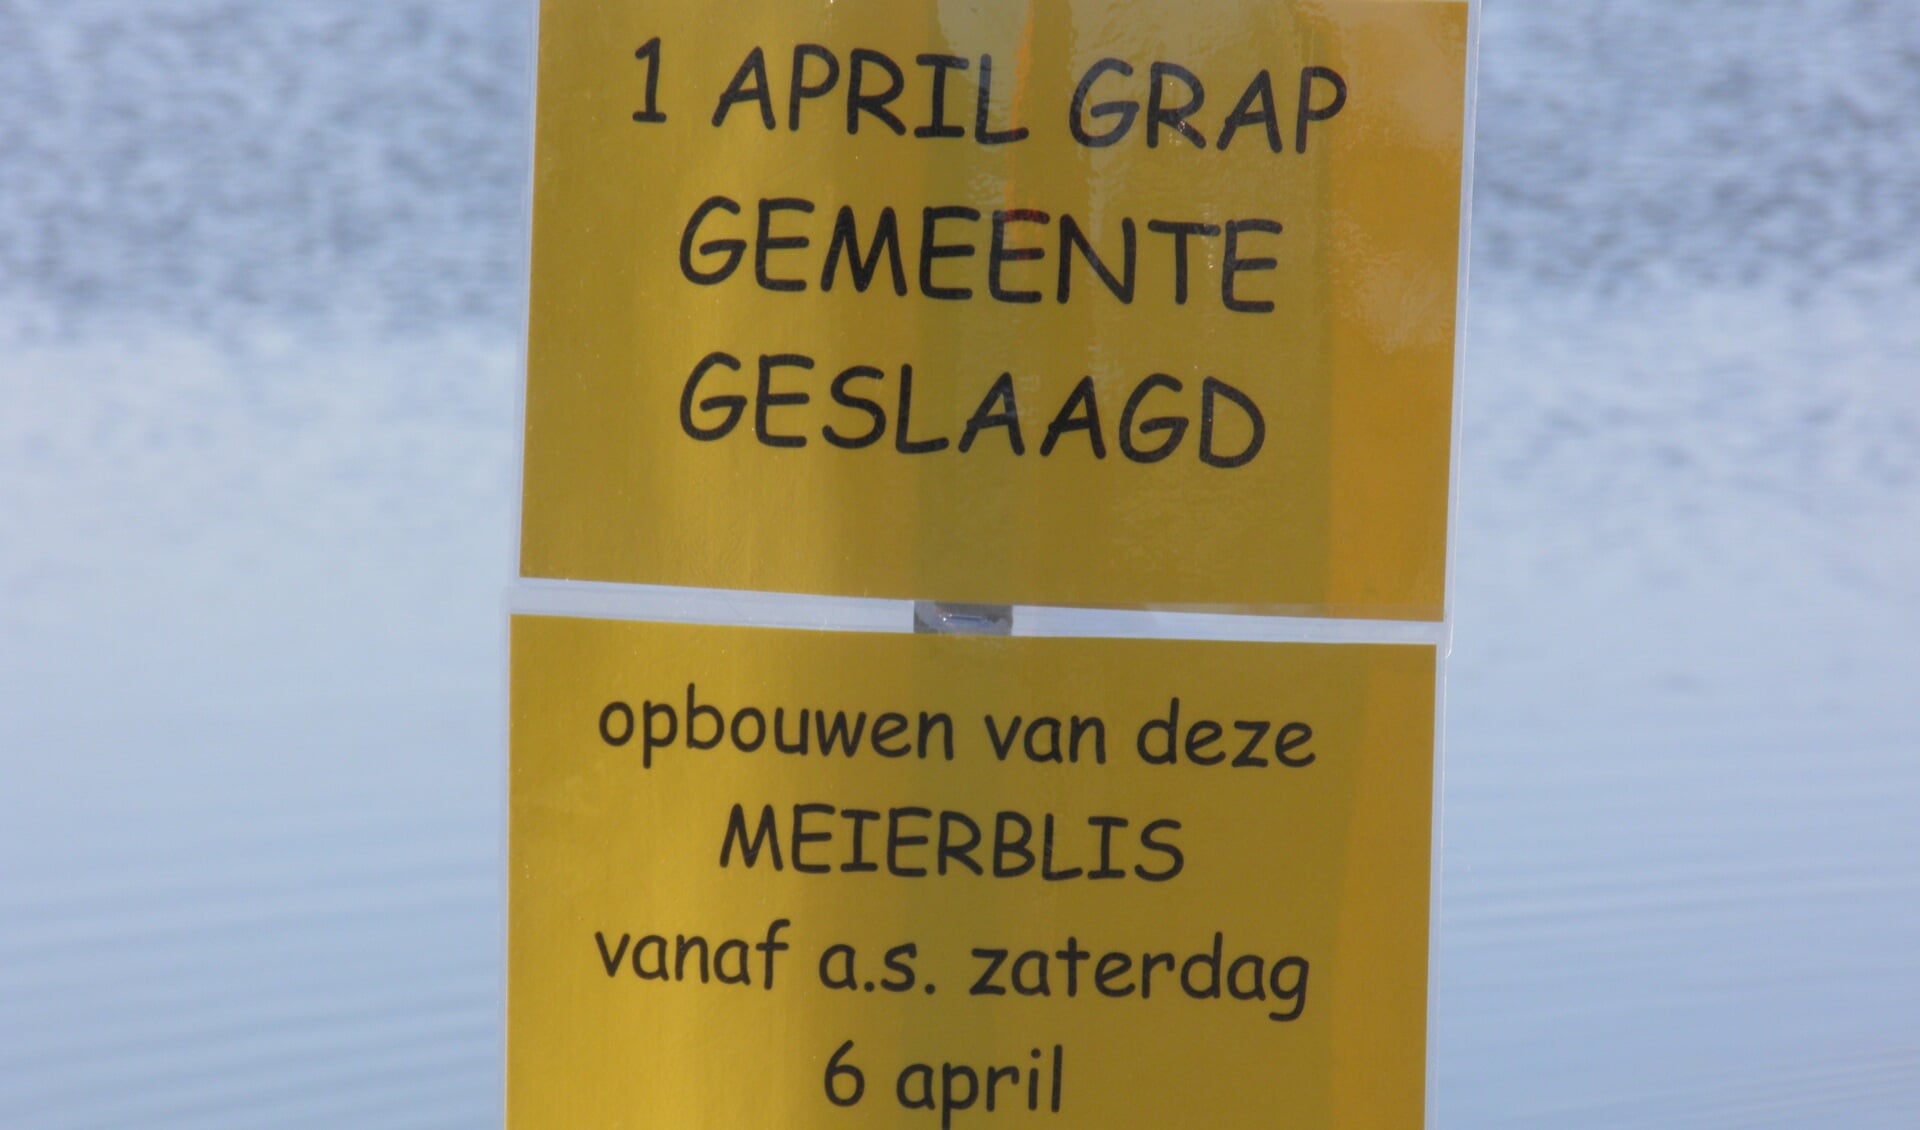 De meierblis van polder Het Noorden mag niet meer bij Utopia worden gehouden. Dit bord suggereert dat het een grap is, of niet? (Foto Janny Rozendaal)